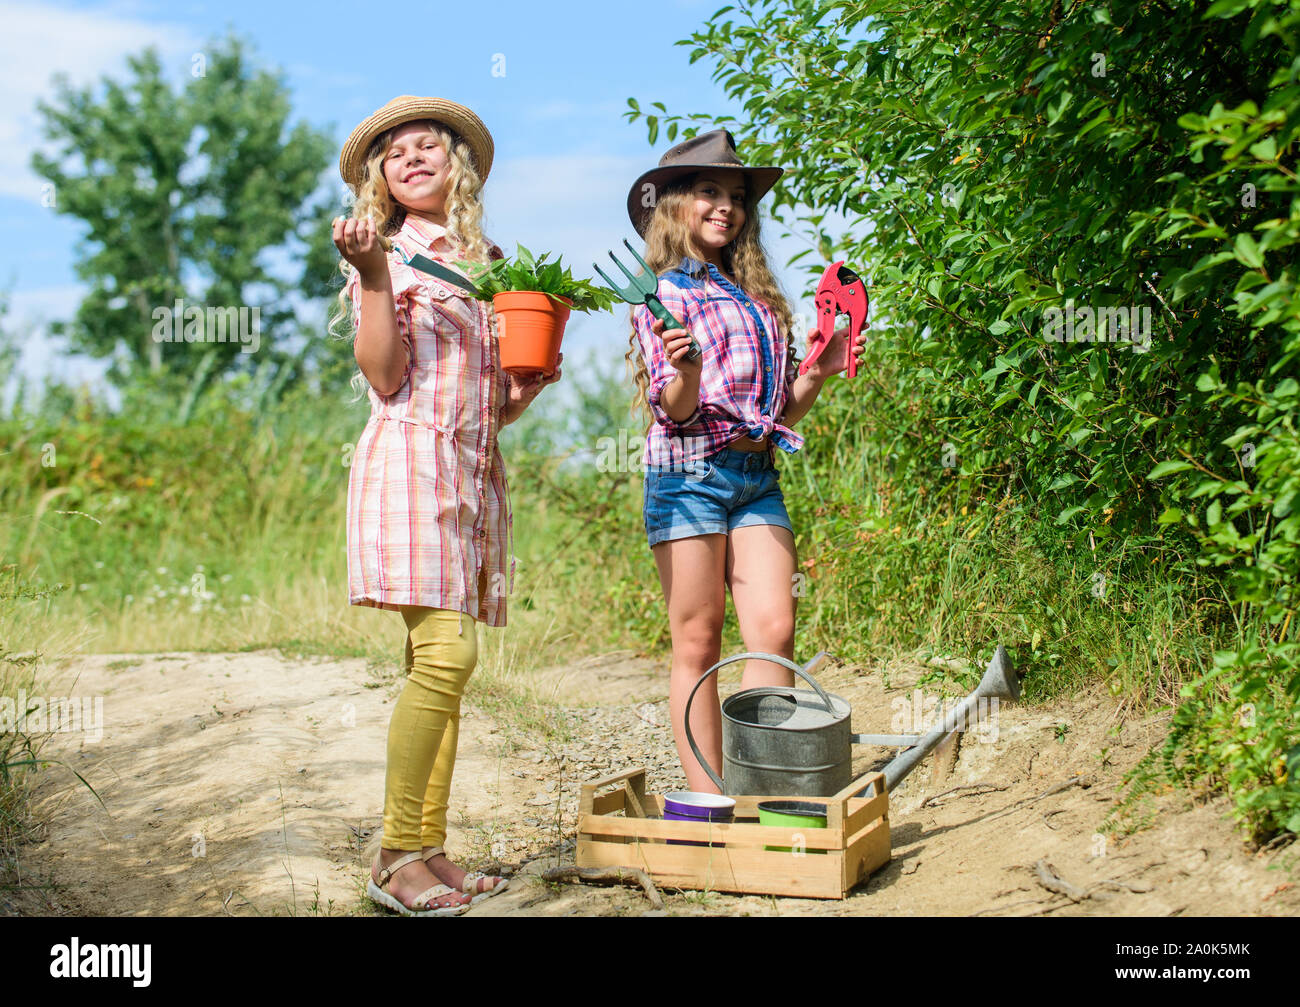 L'écologie et la protection de l'environnement. L'agriculture et  l'agriculture. printemps campagne. Les enfants occupent les outils de  jardinage. Le jour de la terre. L'été ferme familiale. les petites filles  agriculteur au village.